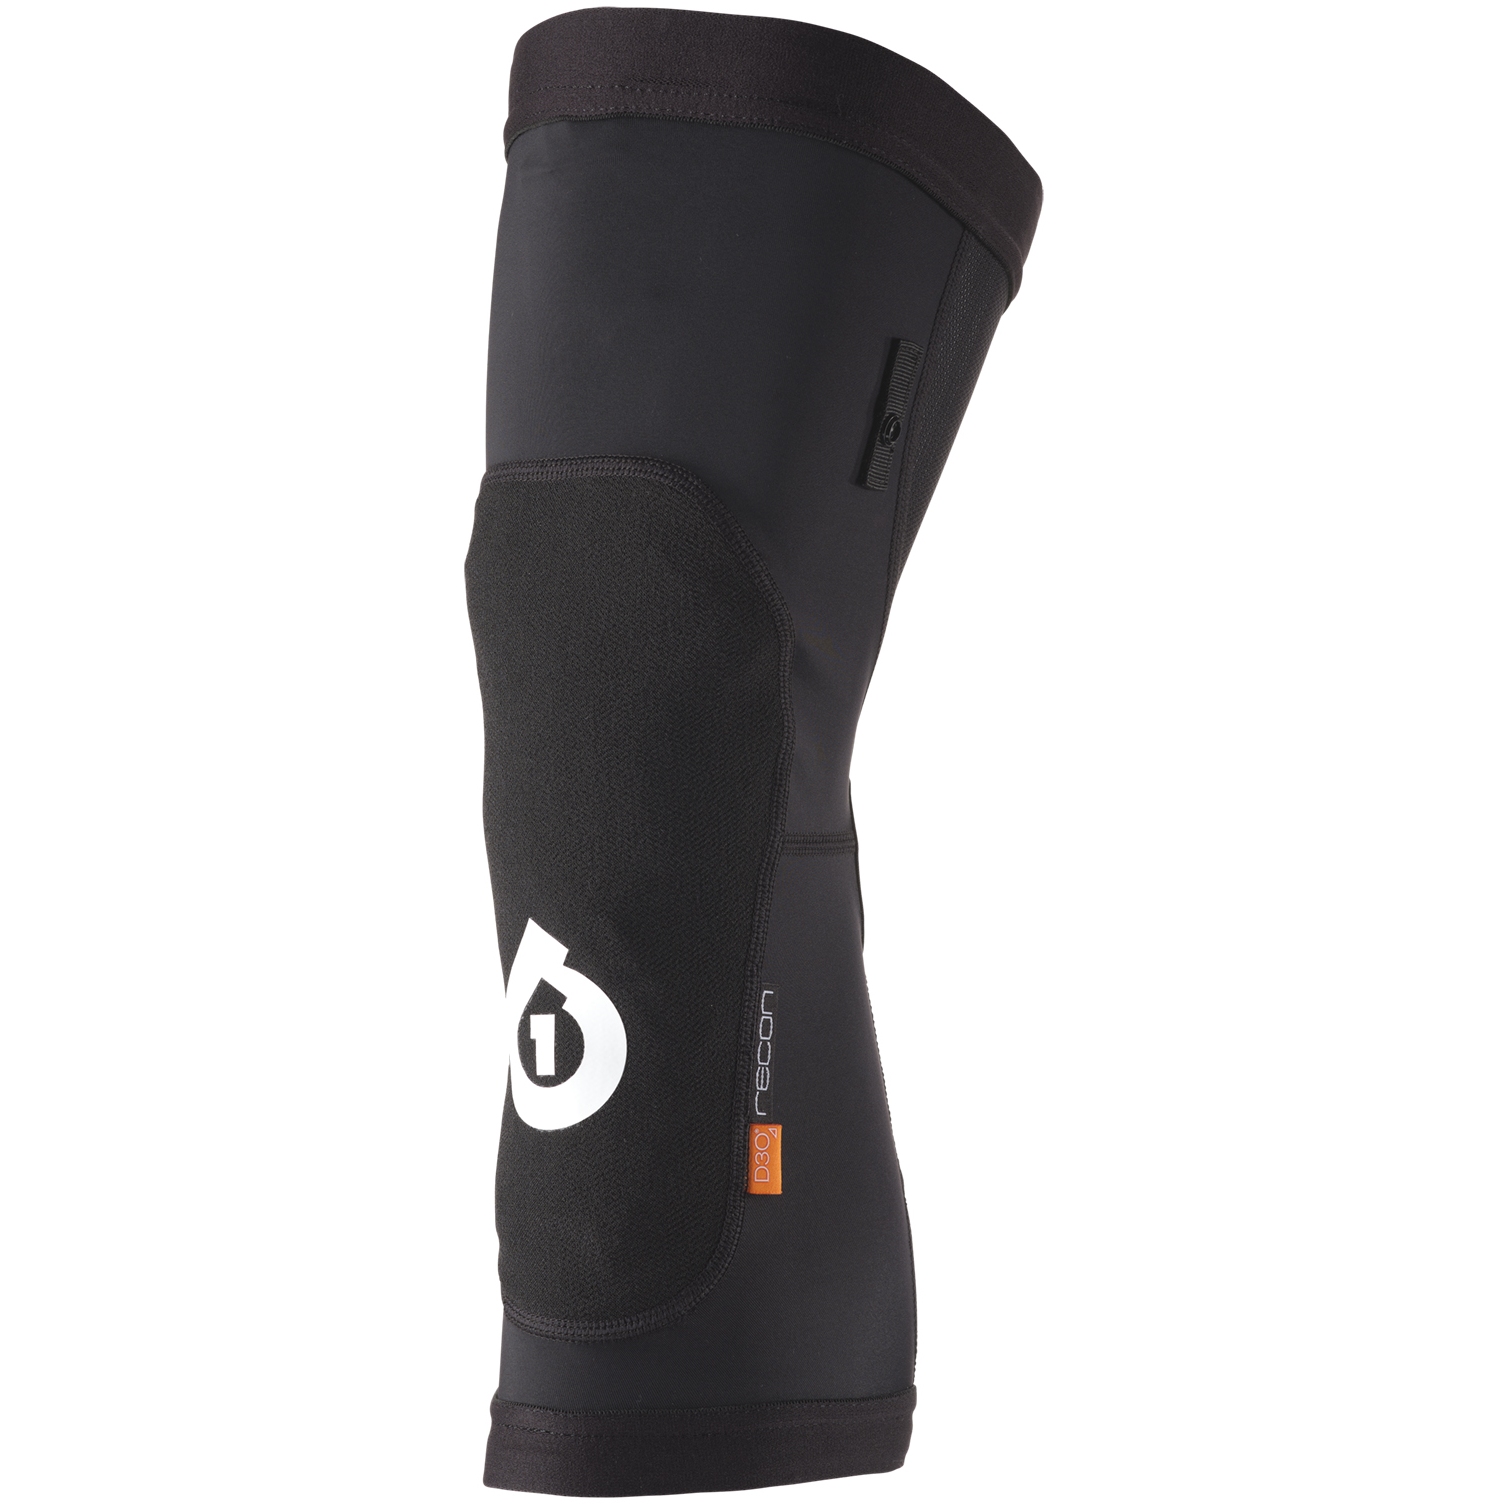 Productfoto van SIXSIXONE Recon Knee (V2) Kniebeschermers - Zwart